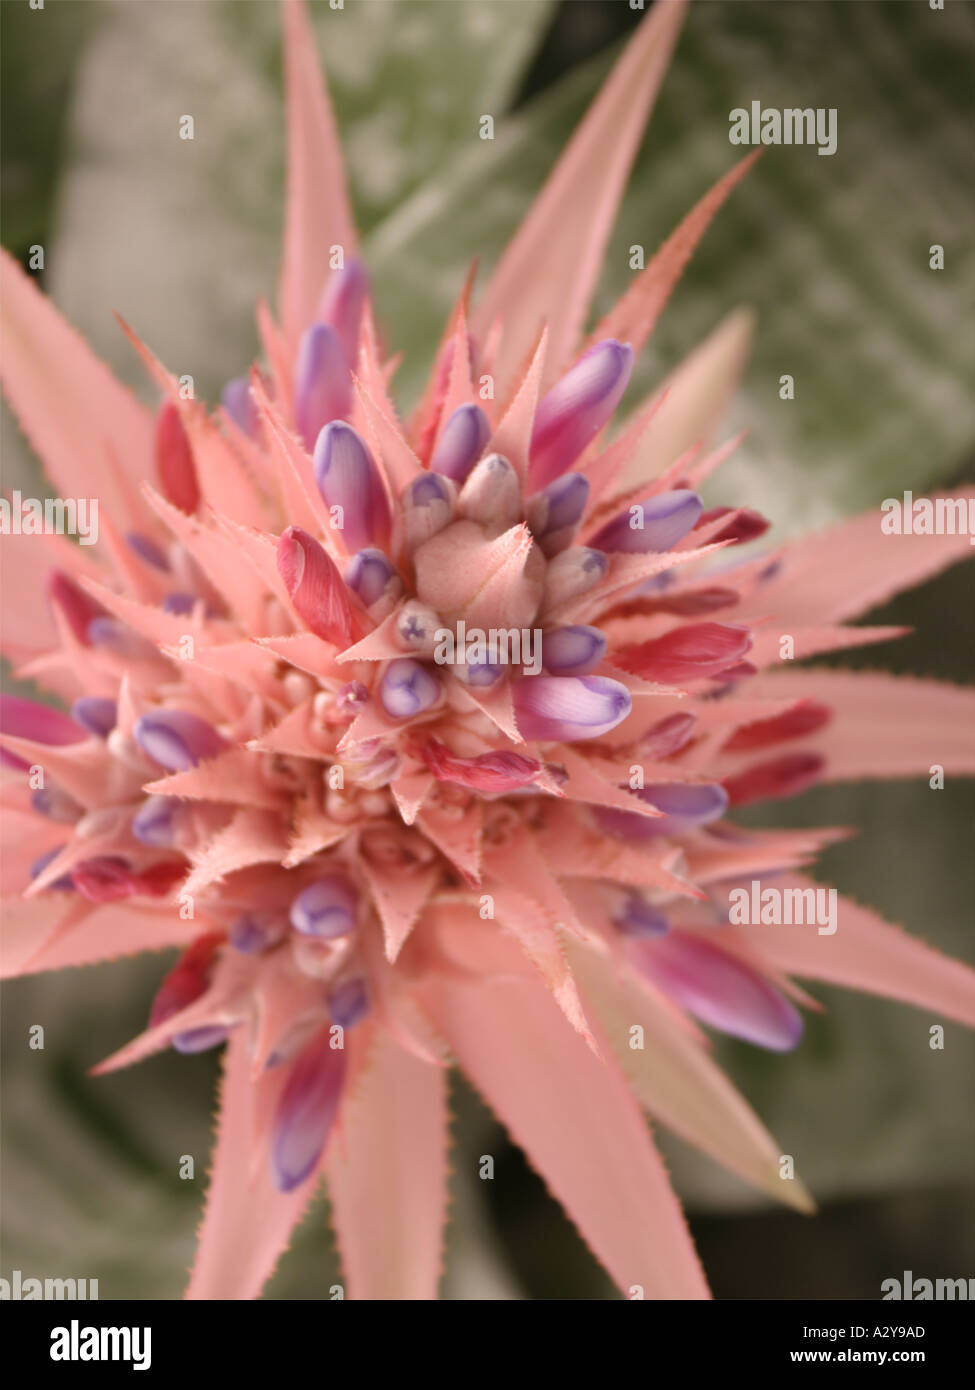 Ein brillantes rosa und lila Bromelien blühen diese Pflanzen produzieren  eine Blüte wie dies nur einmal in ihrem Leben und sterben sho  Stockfotografie - Alamy